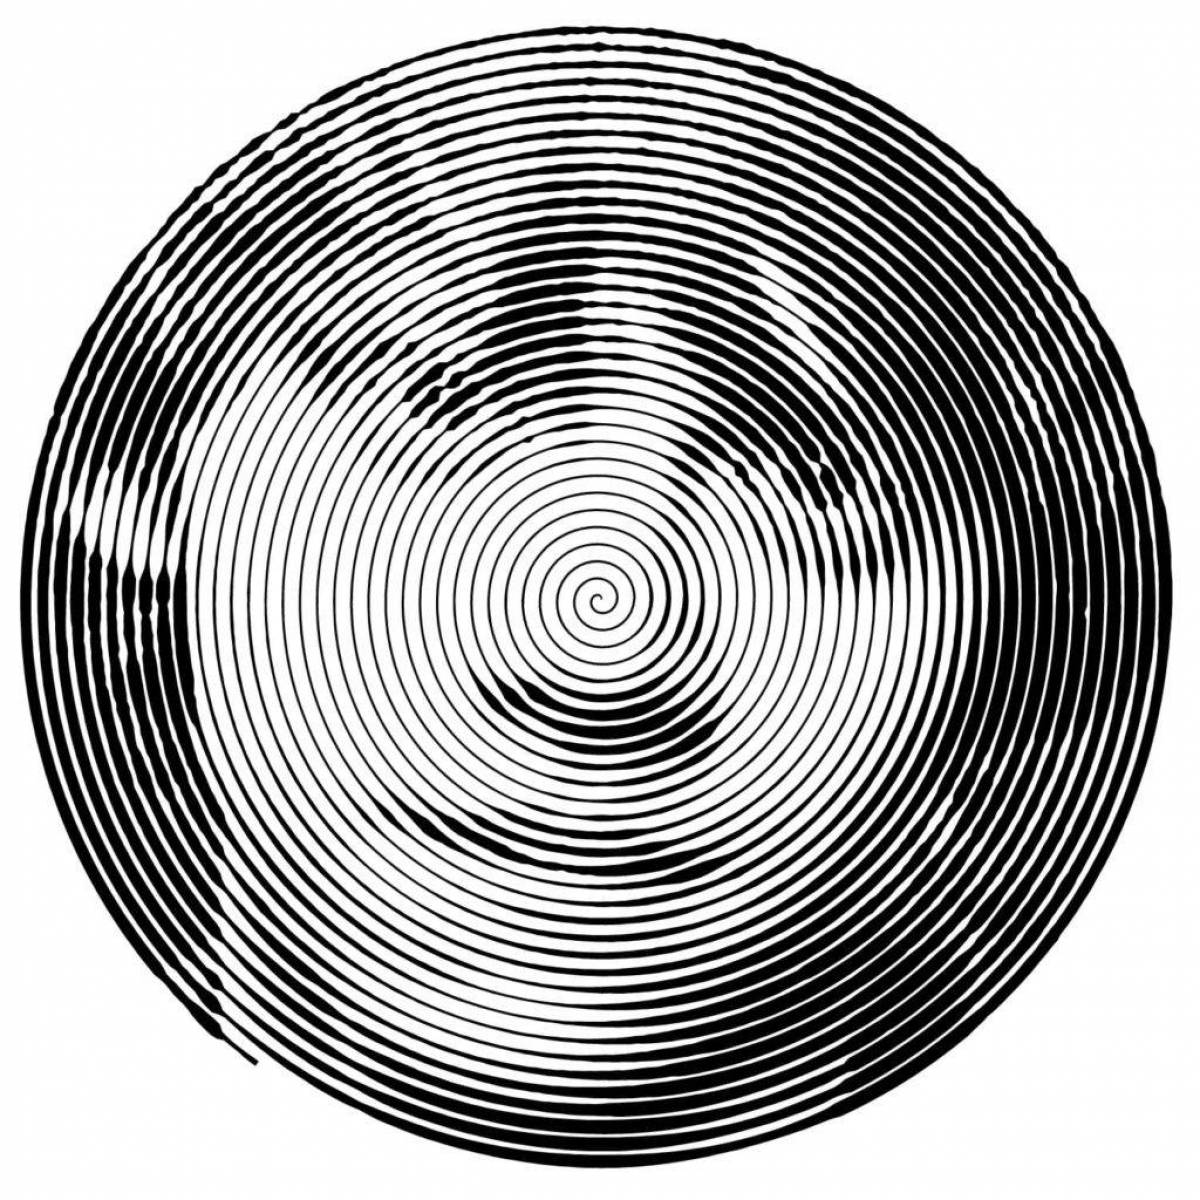 Spiral pattern #2